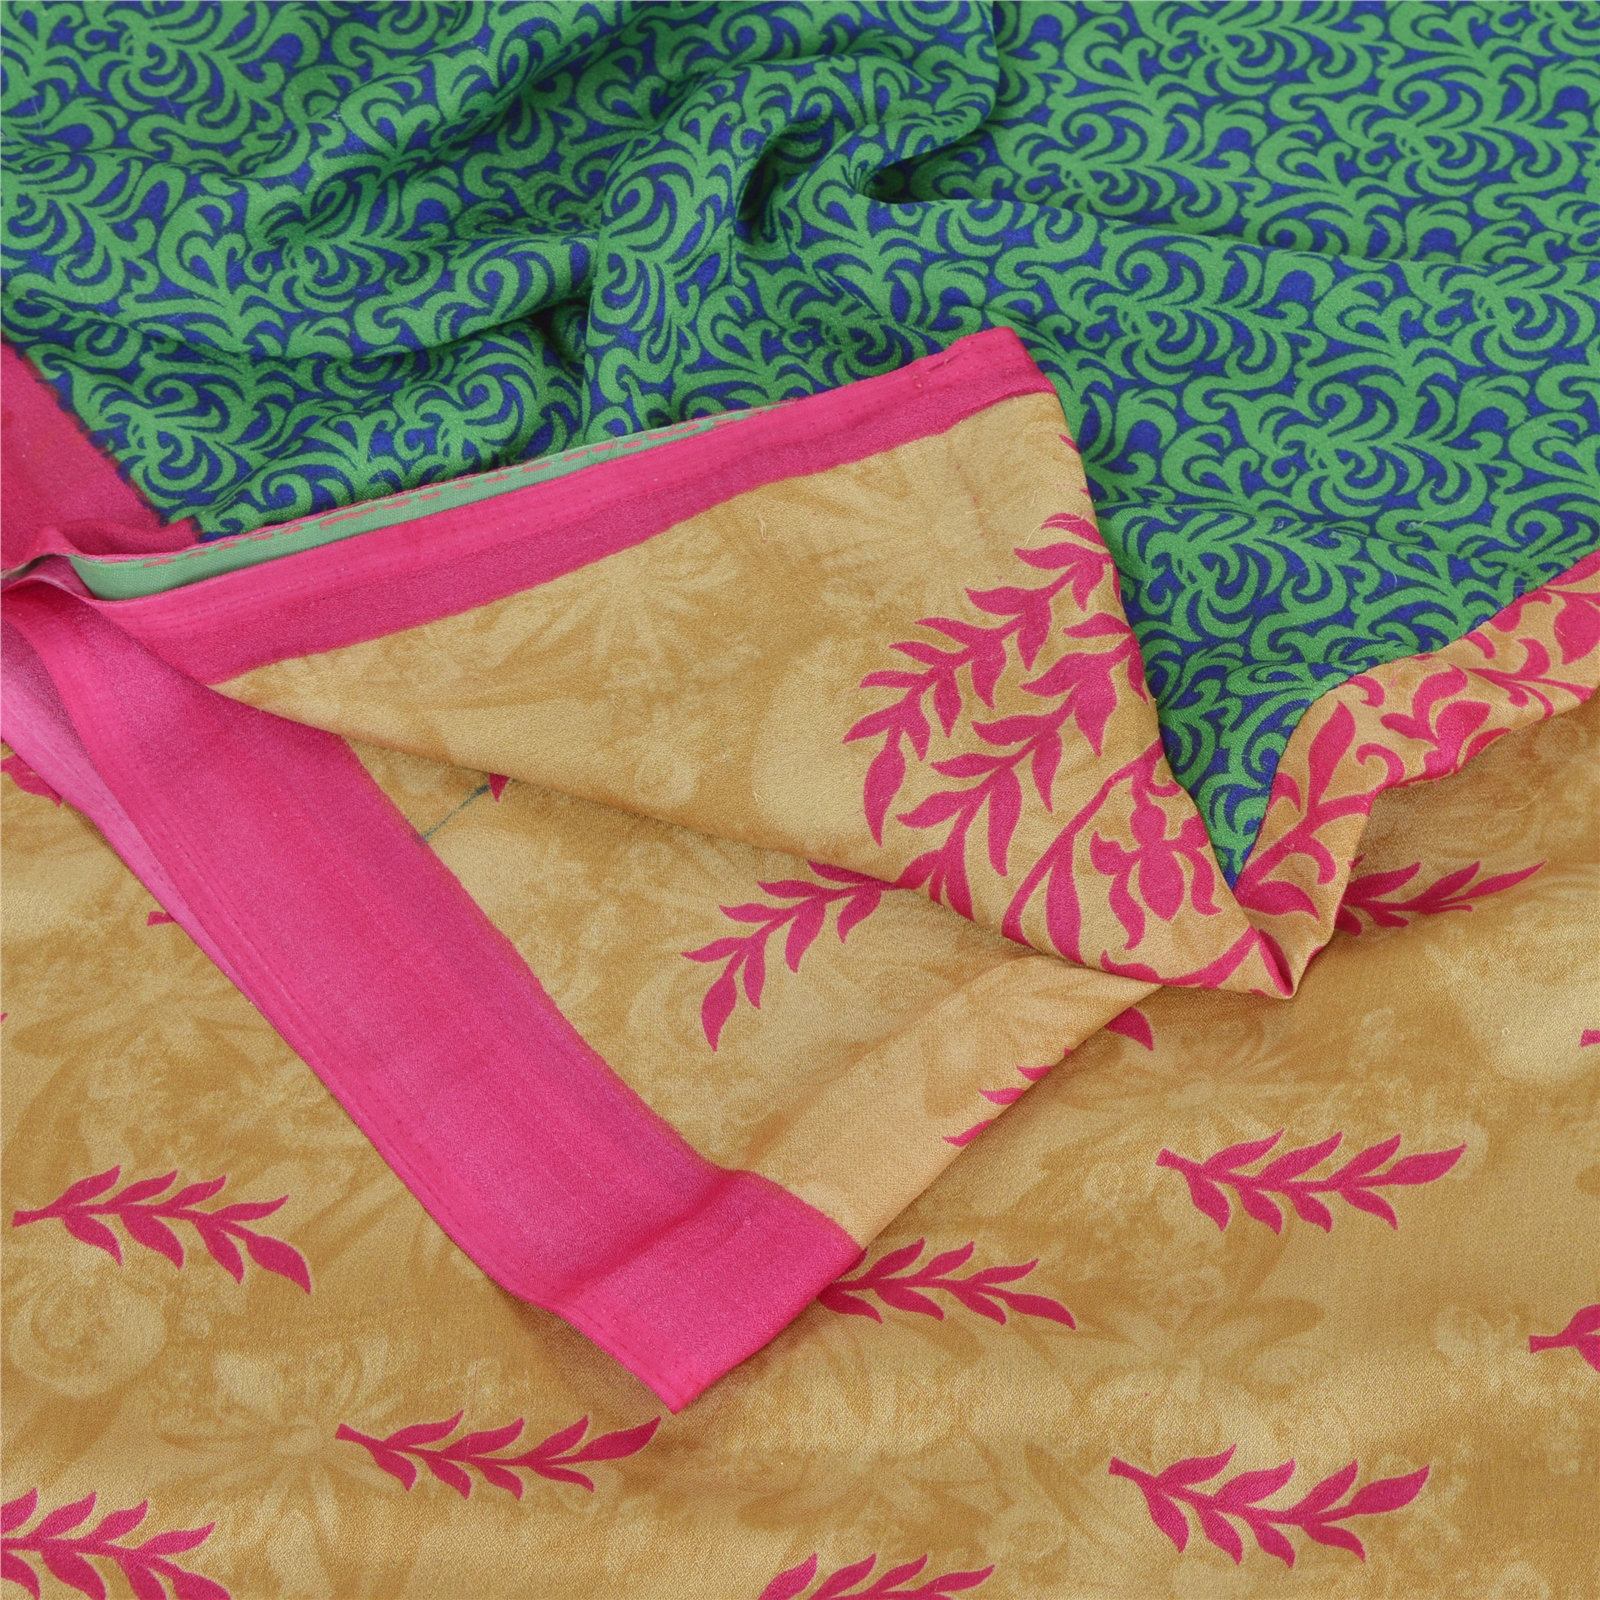 Indian Vintage 100/% Pure Crepe Silk Sari Multi color Floral Printed Saree Crafting 5 Yard Dressmaking Sari Fabric